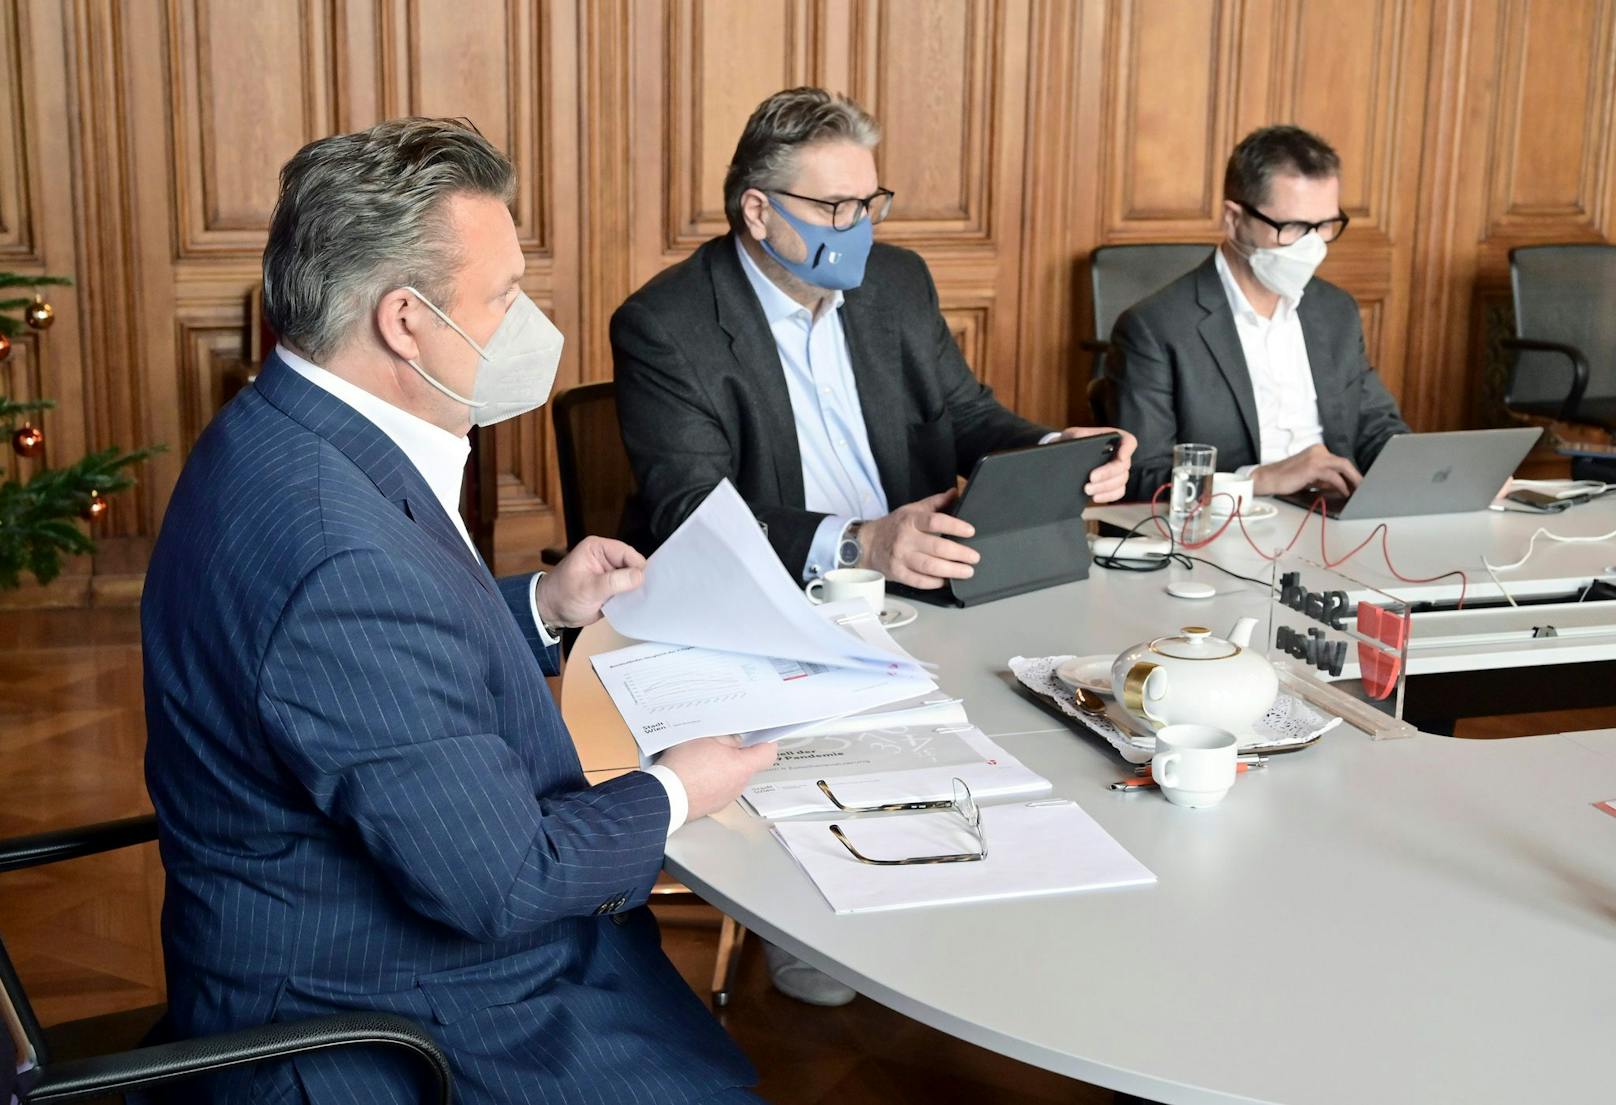 Wiens Bürgermeister Michael Ludwig (SPÖ) berät mit Experten über das weitere Vorgehen im Kampf gegen die Corona-Pandemie.